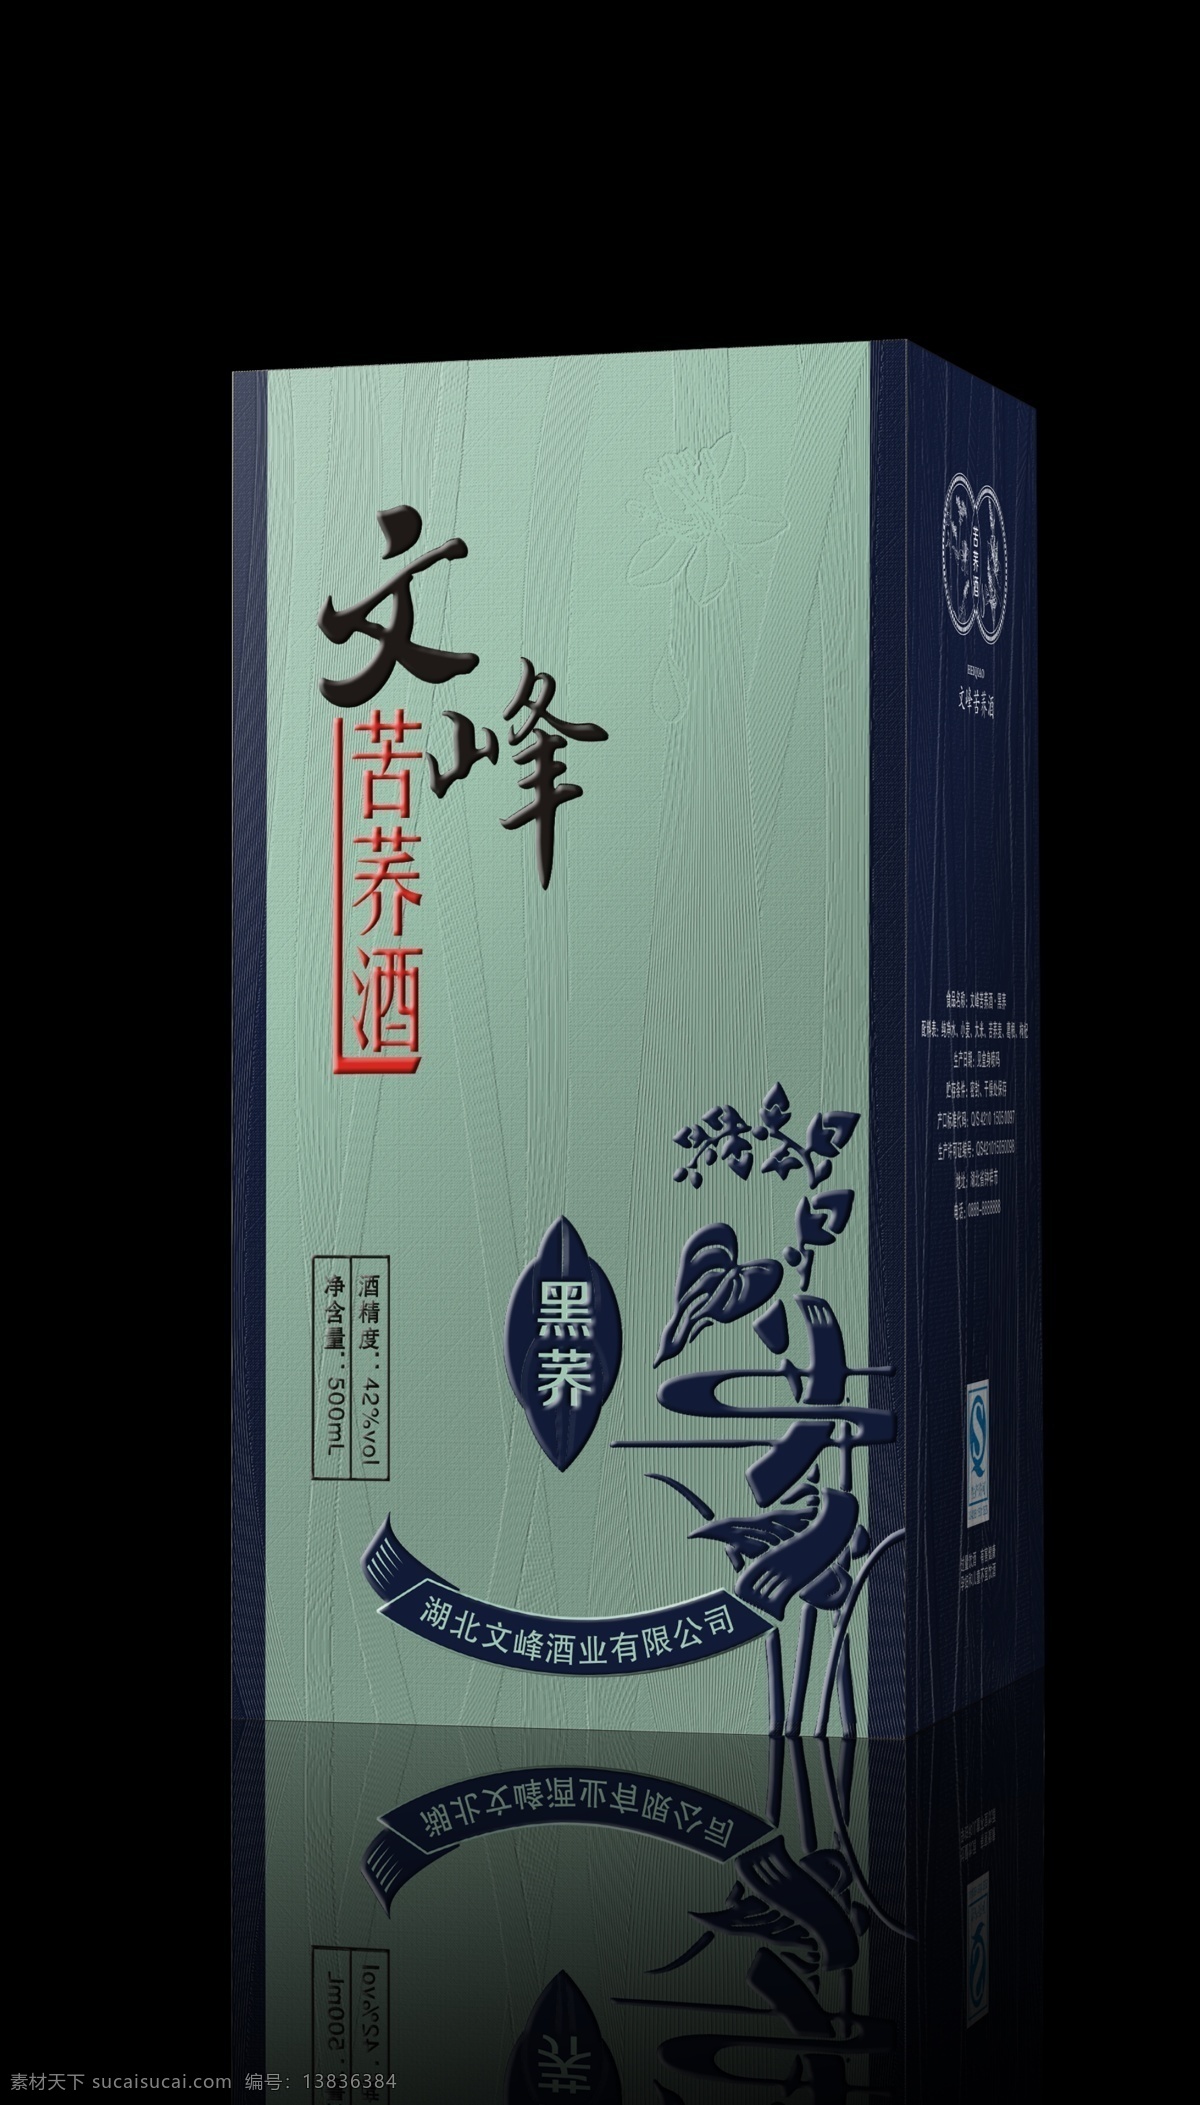 文峰 苦荞 酒 效果图 文峰酒 苦荞酒 酒盒 包装 包装设计